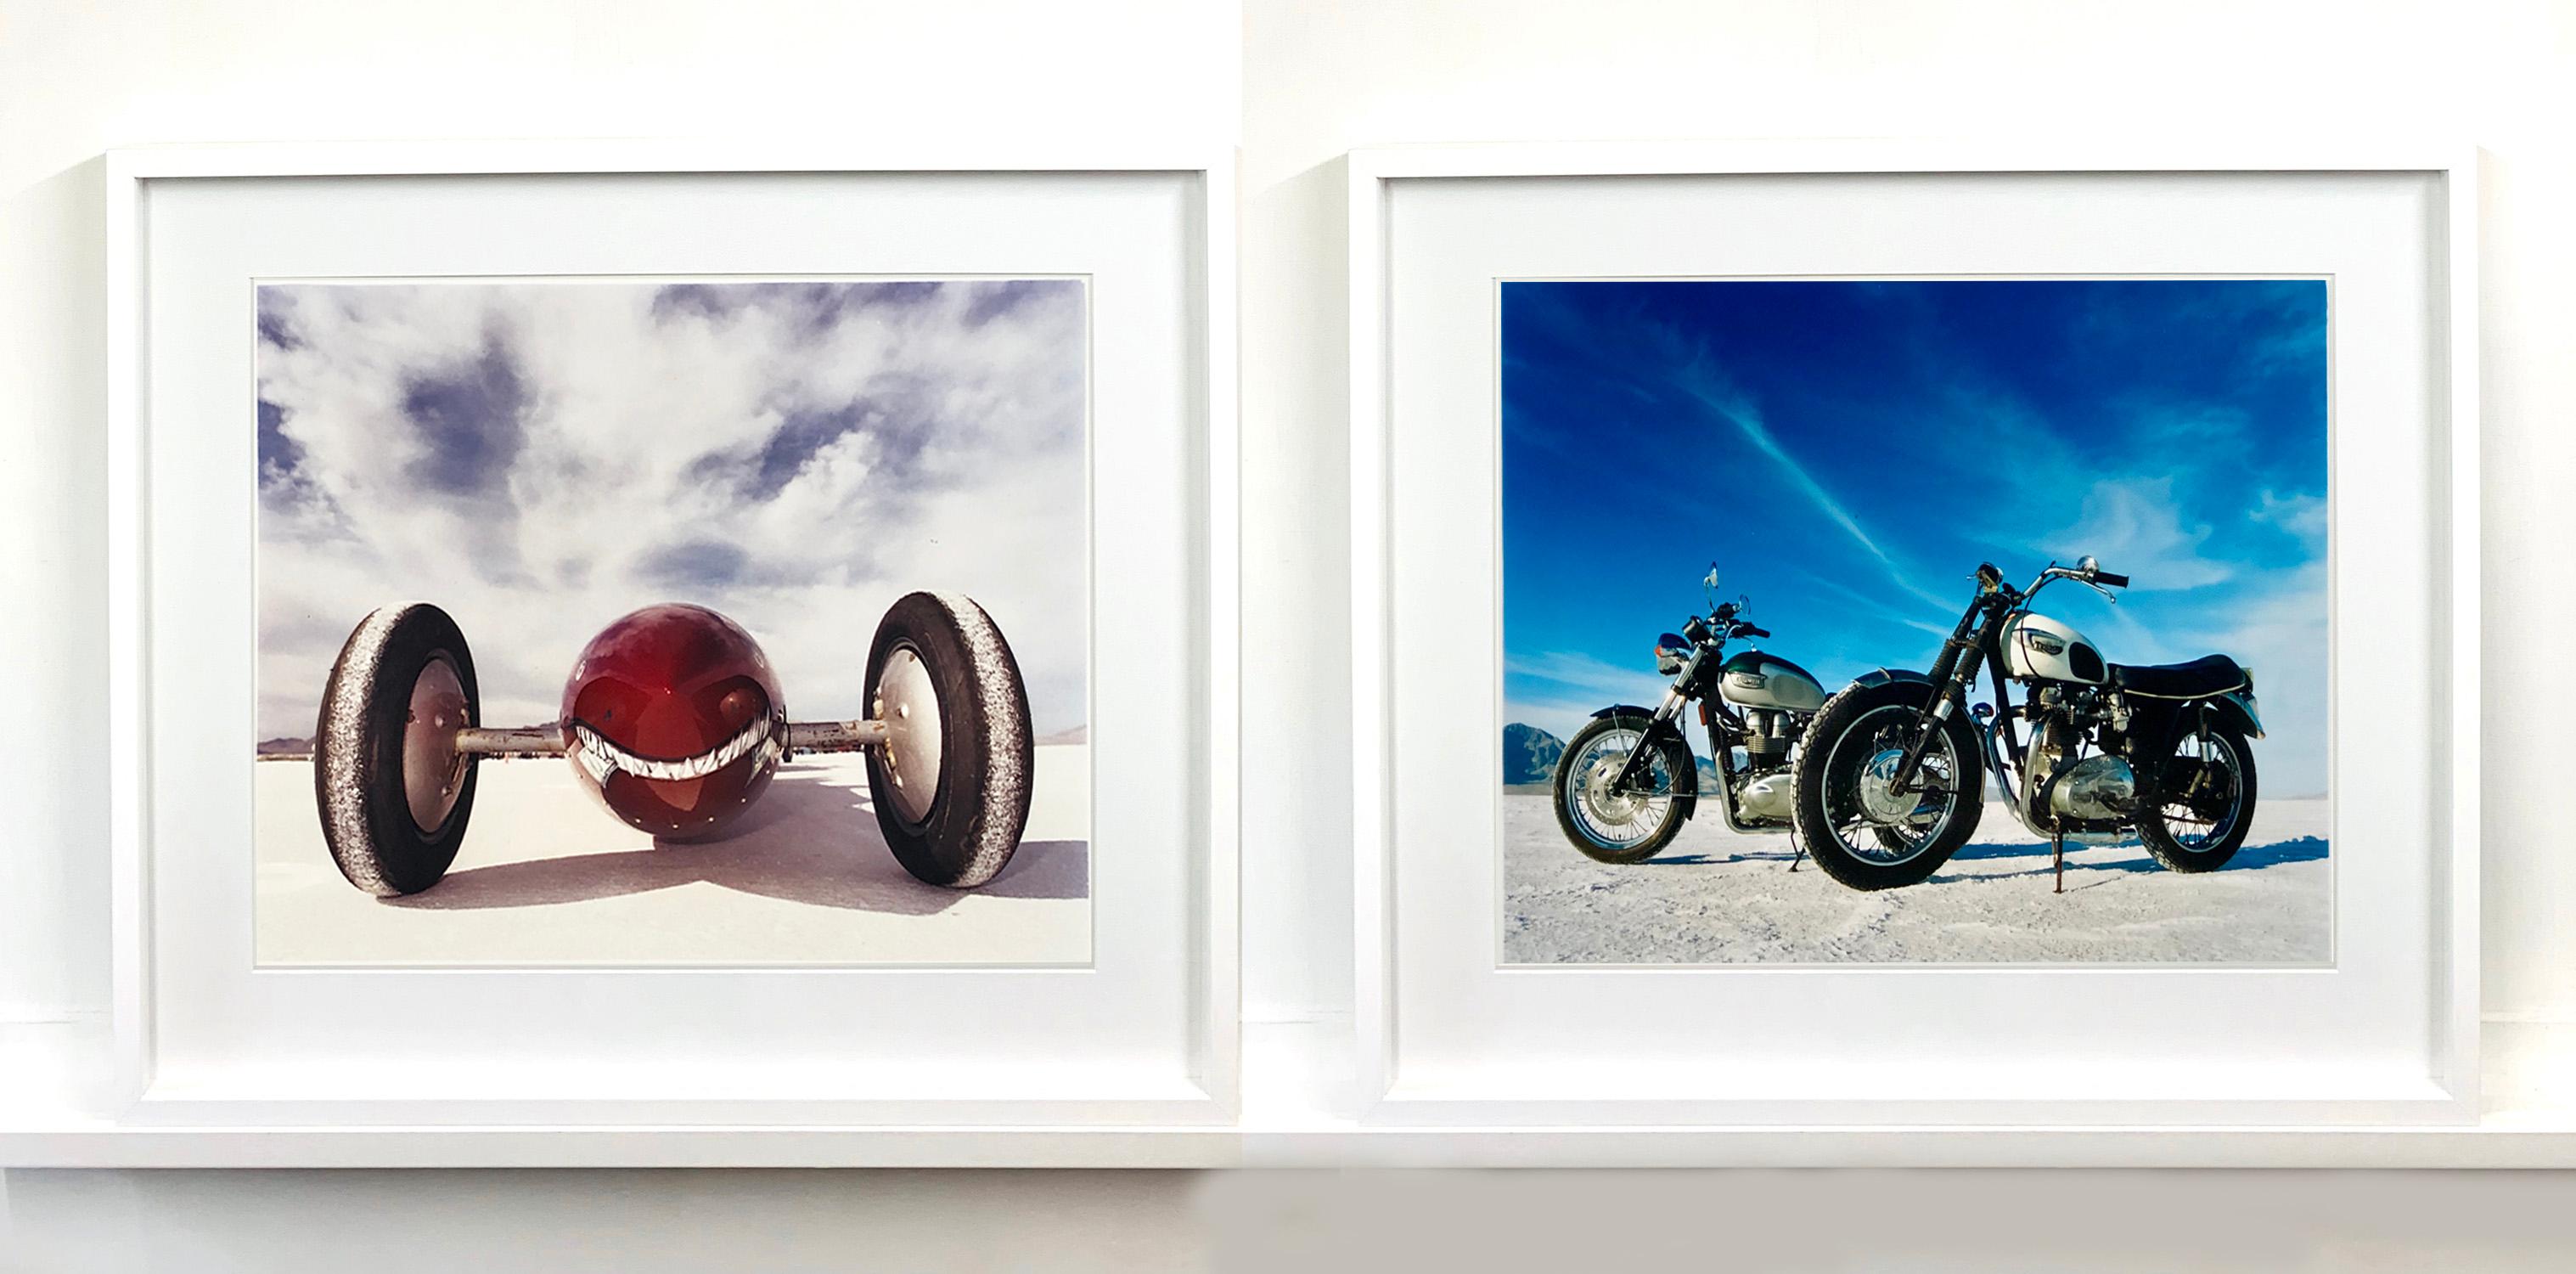 Bonneville Motorcycles, Bonneville, Utah - American Landscape Color Photography For Sale 2